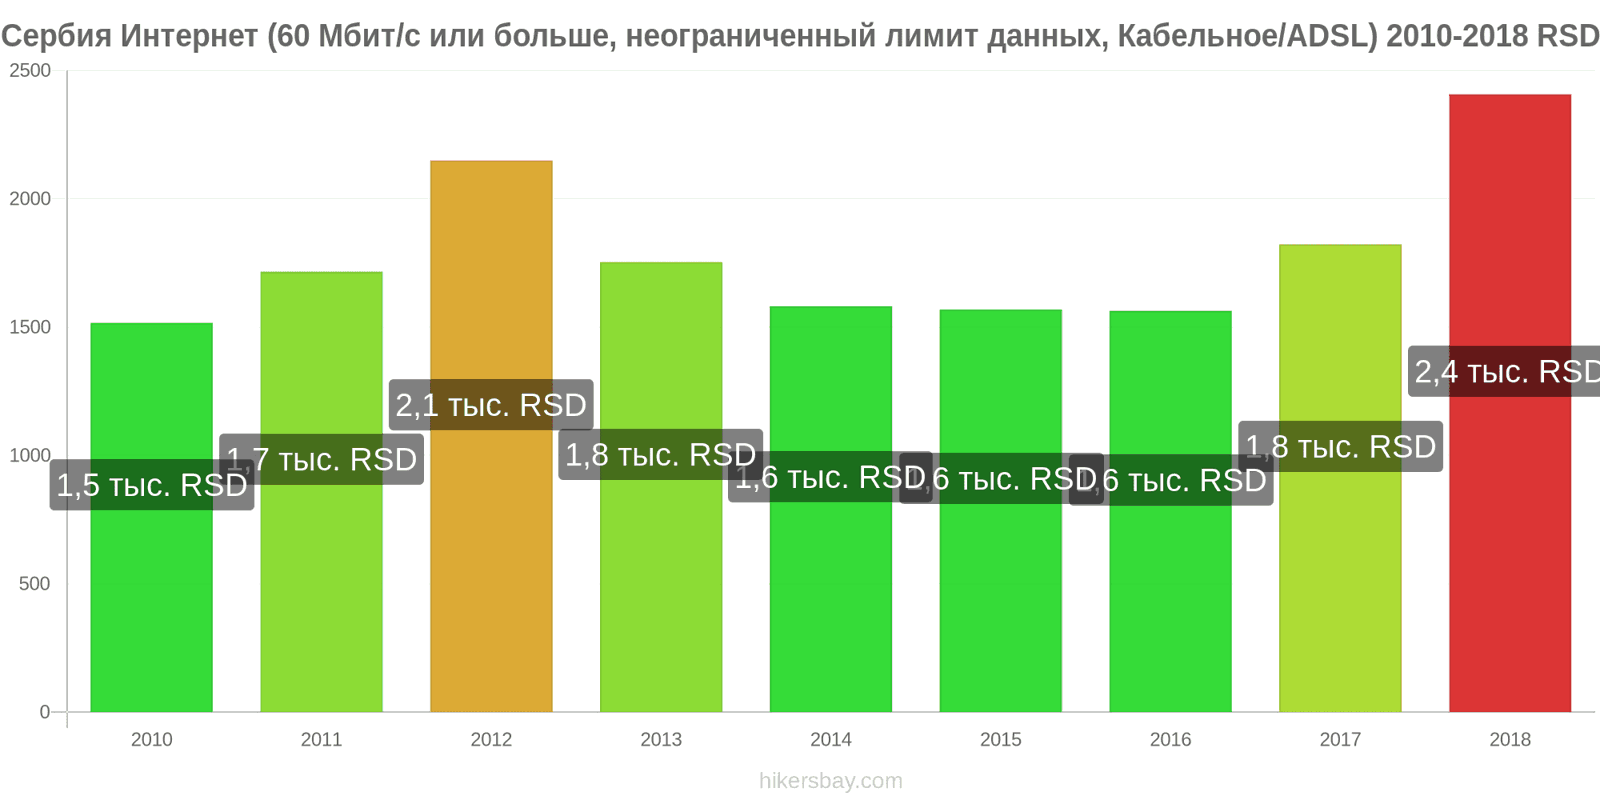 Сербия изменения цен Интернет (60 Мбит/с или больше, неограниченный лимит данных, кабель/ADSL) hikersbay.com